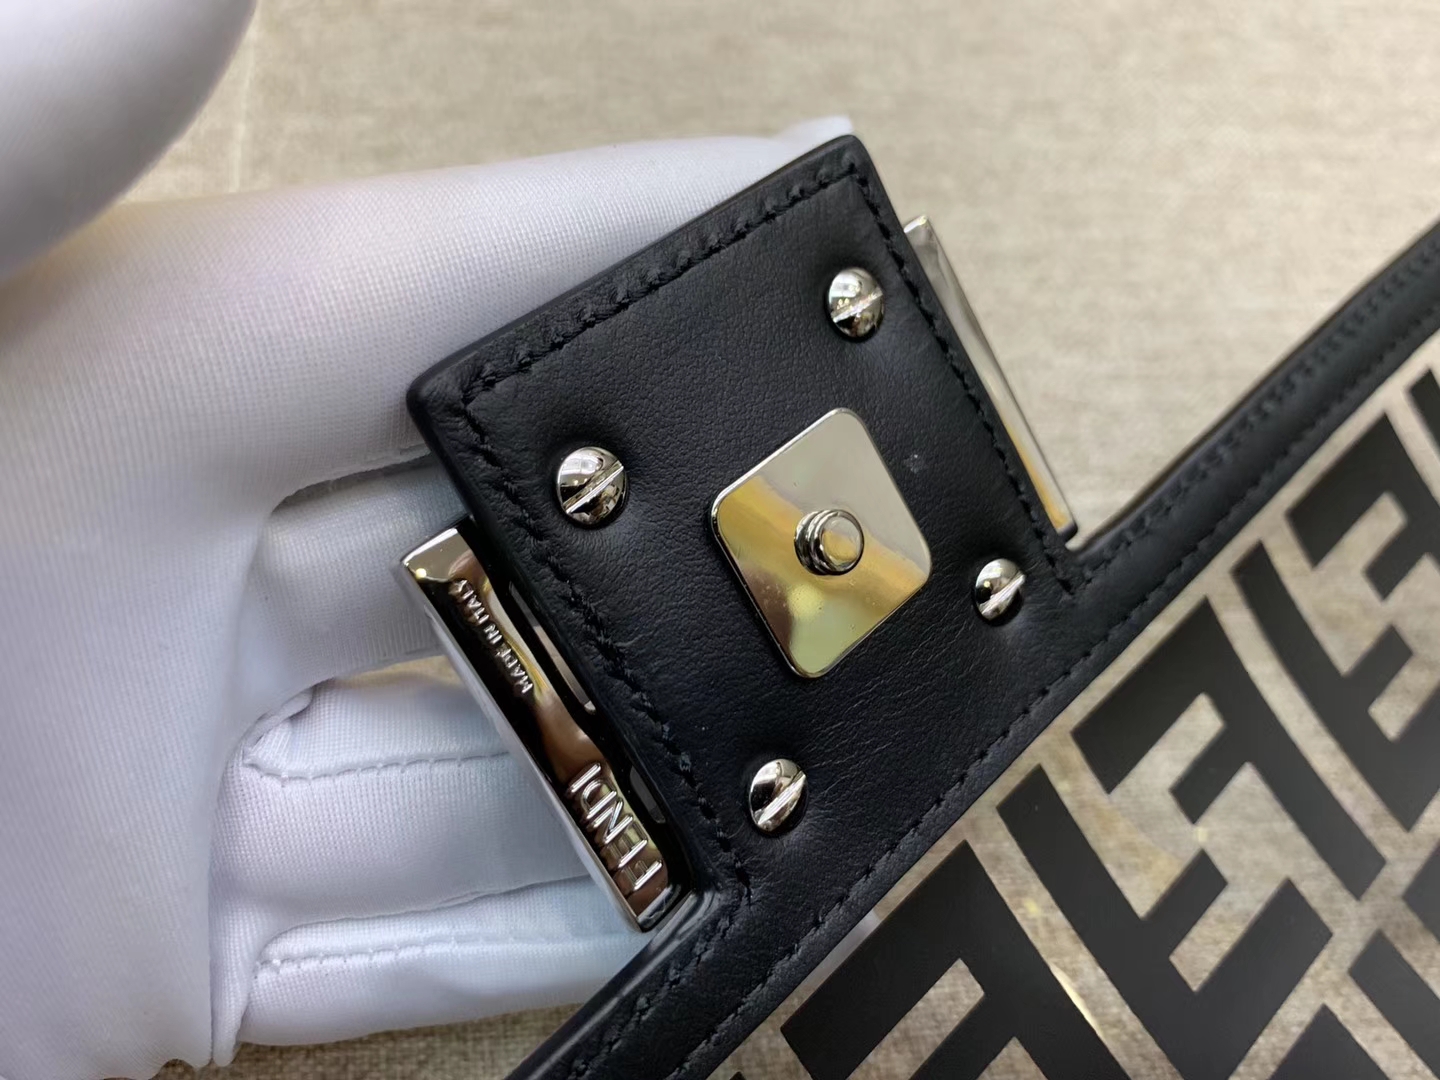 Fendi 芬迪 法棍包 Baguette手袋 全透明的TPU F 印花 26cm 黑色